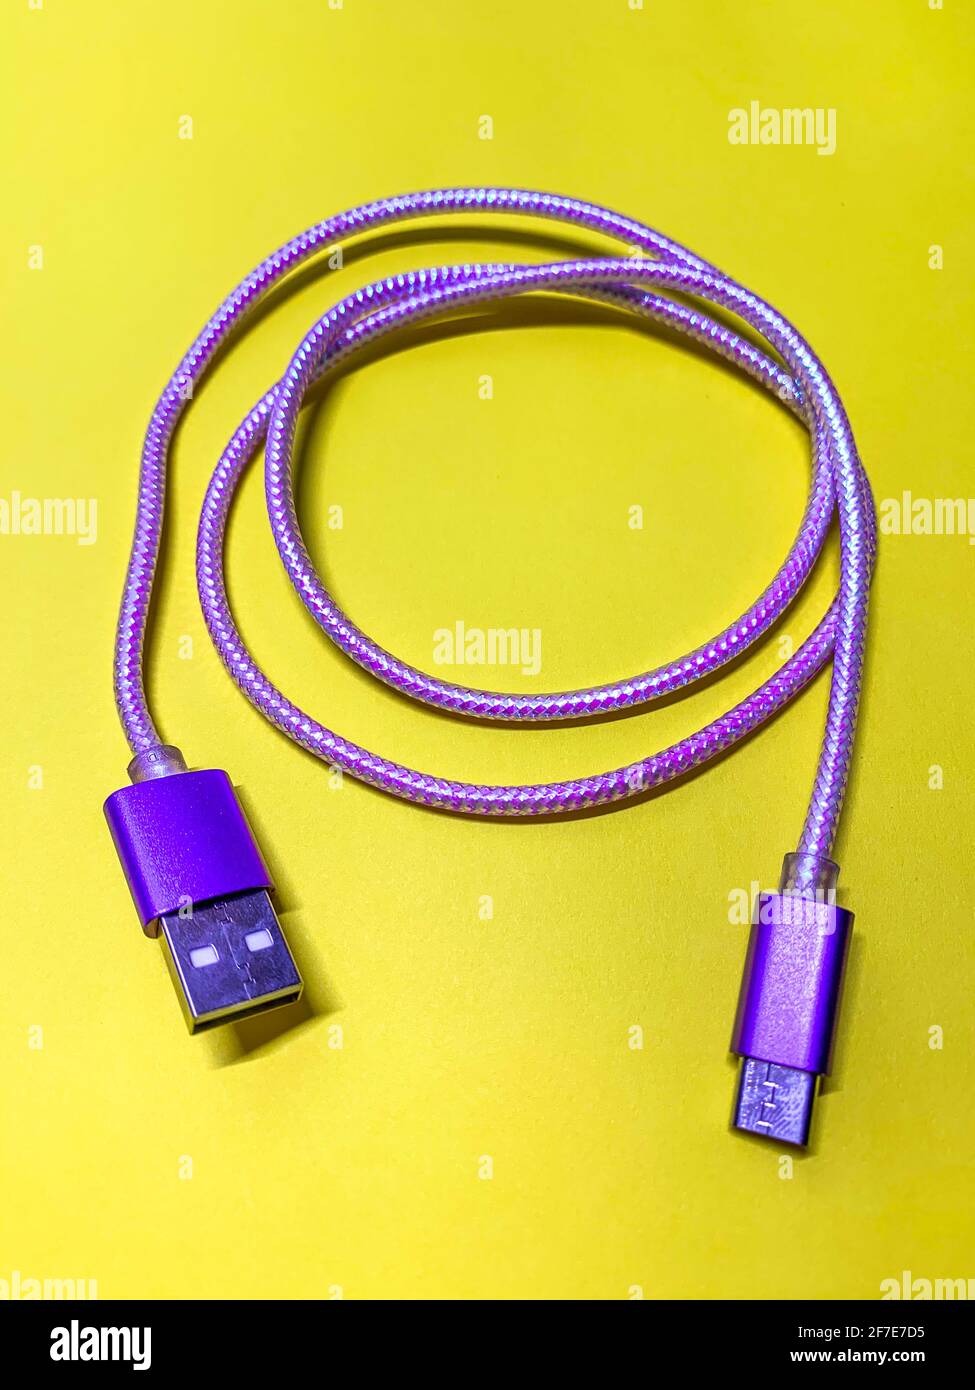 Violettes usb-Kabel auf gelbem Hintergrund, vertikale Ausrichtung Stockfoto